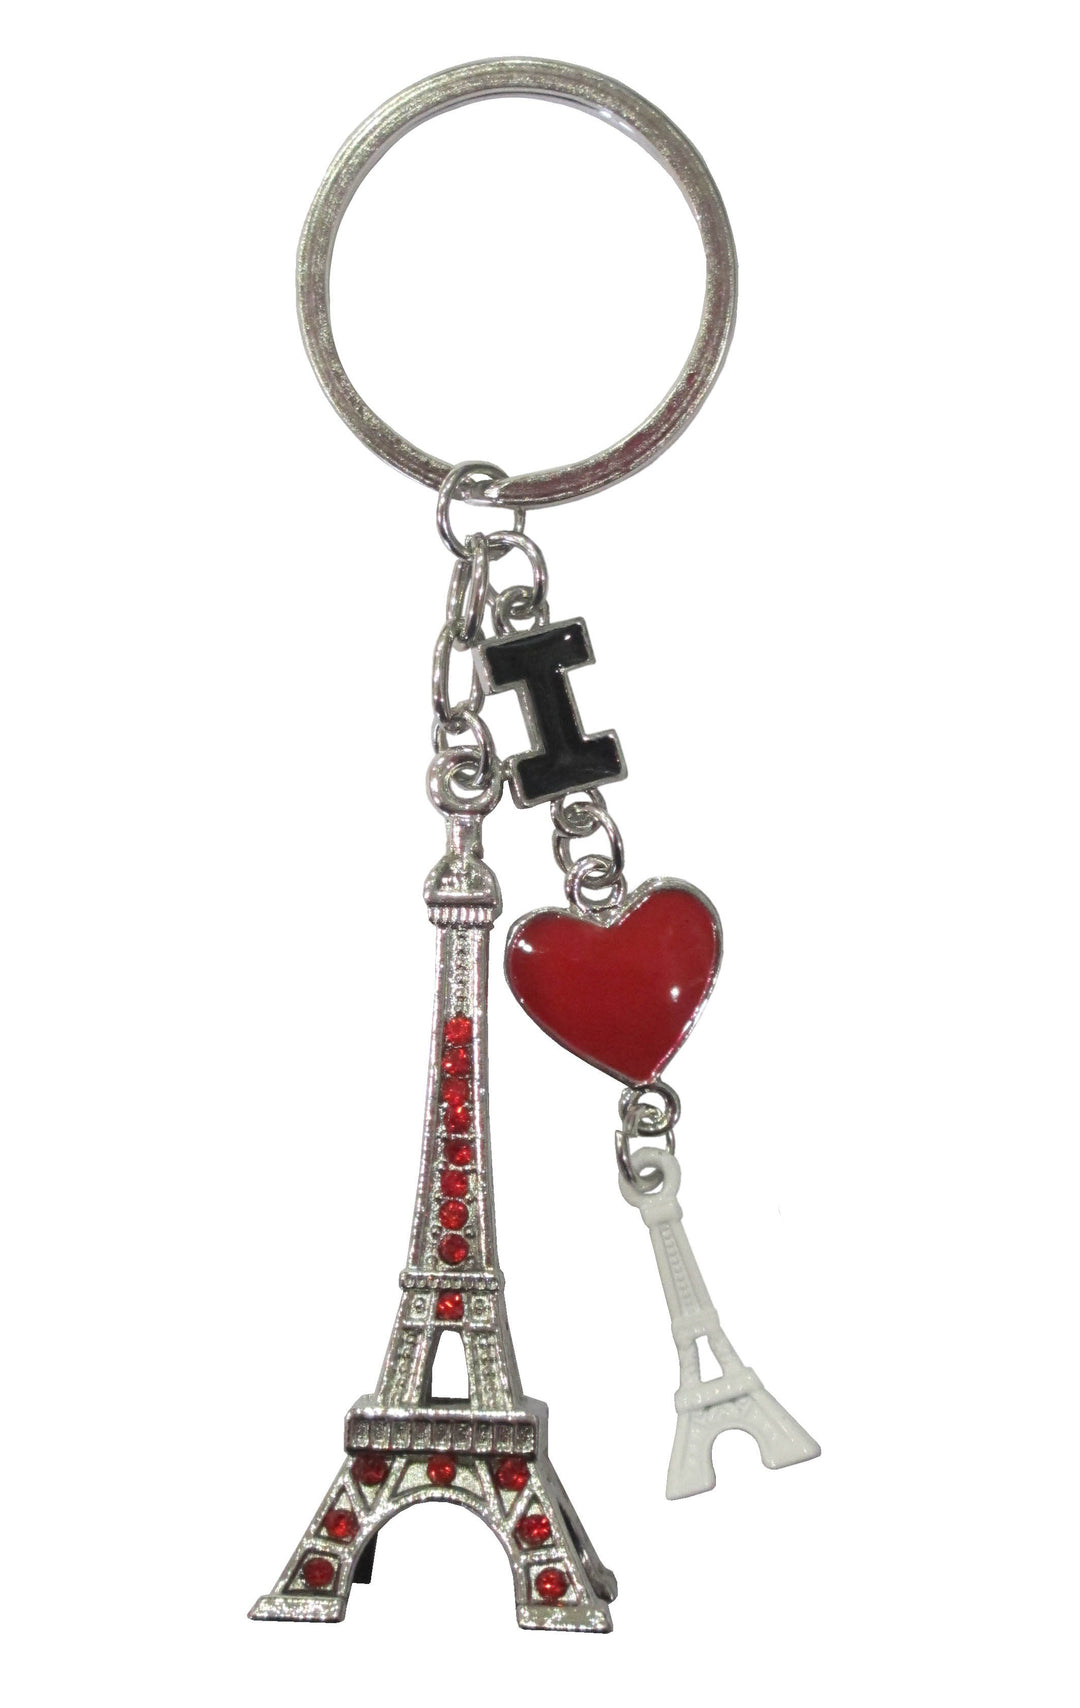 Porte-clés 'I Love Paris' avec une miniature de la tour Eiffel et une chaînette en forme de cœur, évoquant l'amour de Paris.